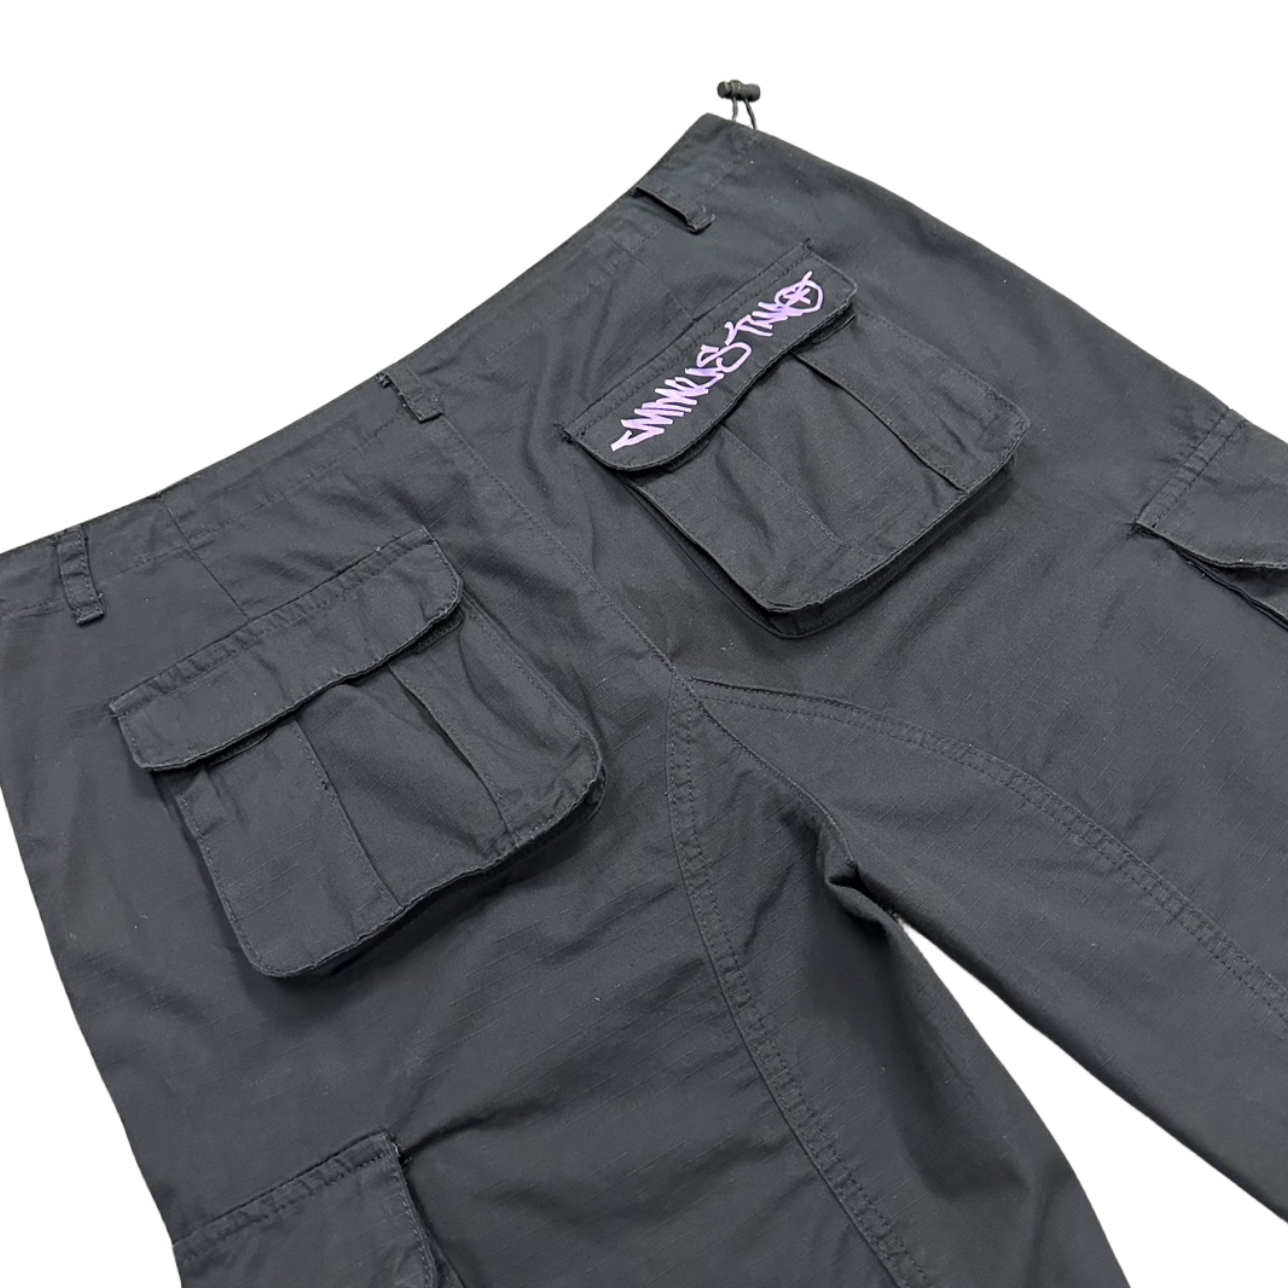 Minus Two Cargo Pants Y2K Streetwear Overalls Jeans Long Joggers Women's Men's Trousers - Black/Purple